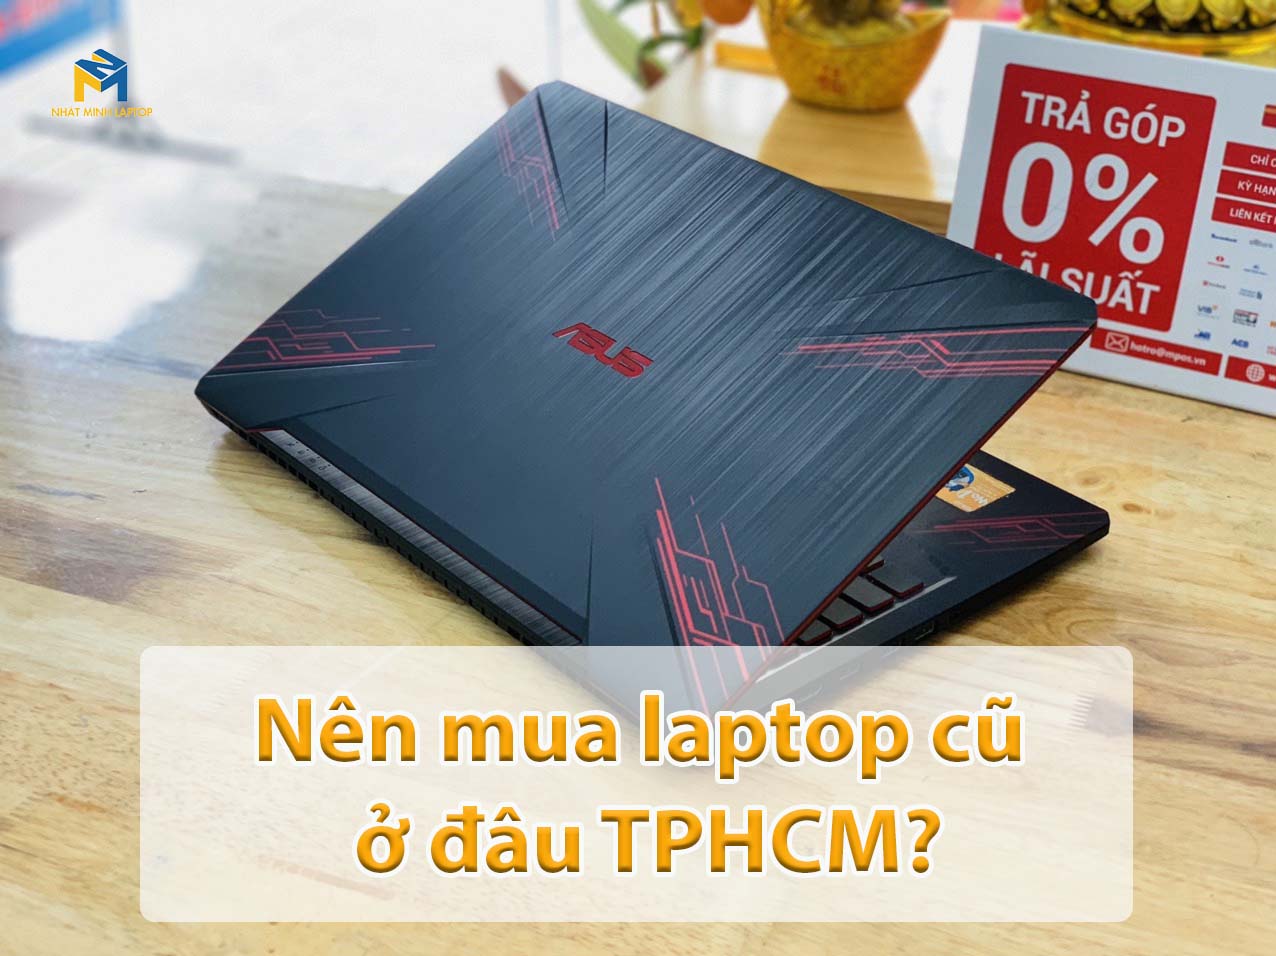 Nên Mua Laptop Cũ Ở Đâu Tphcm Vừa Có Giá Rẻ Lại Vừa Uy Tín?